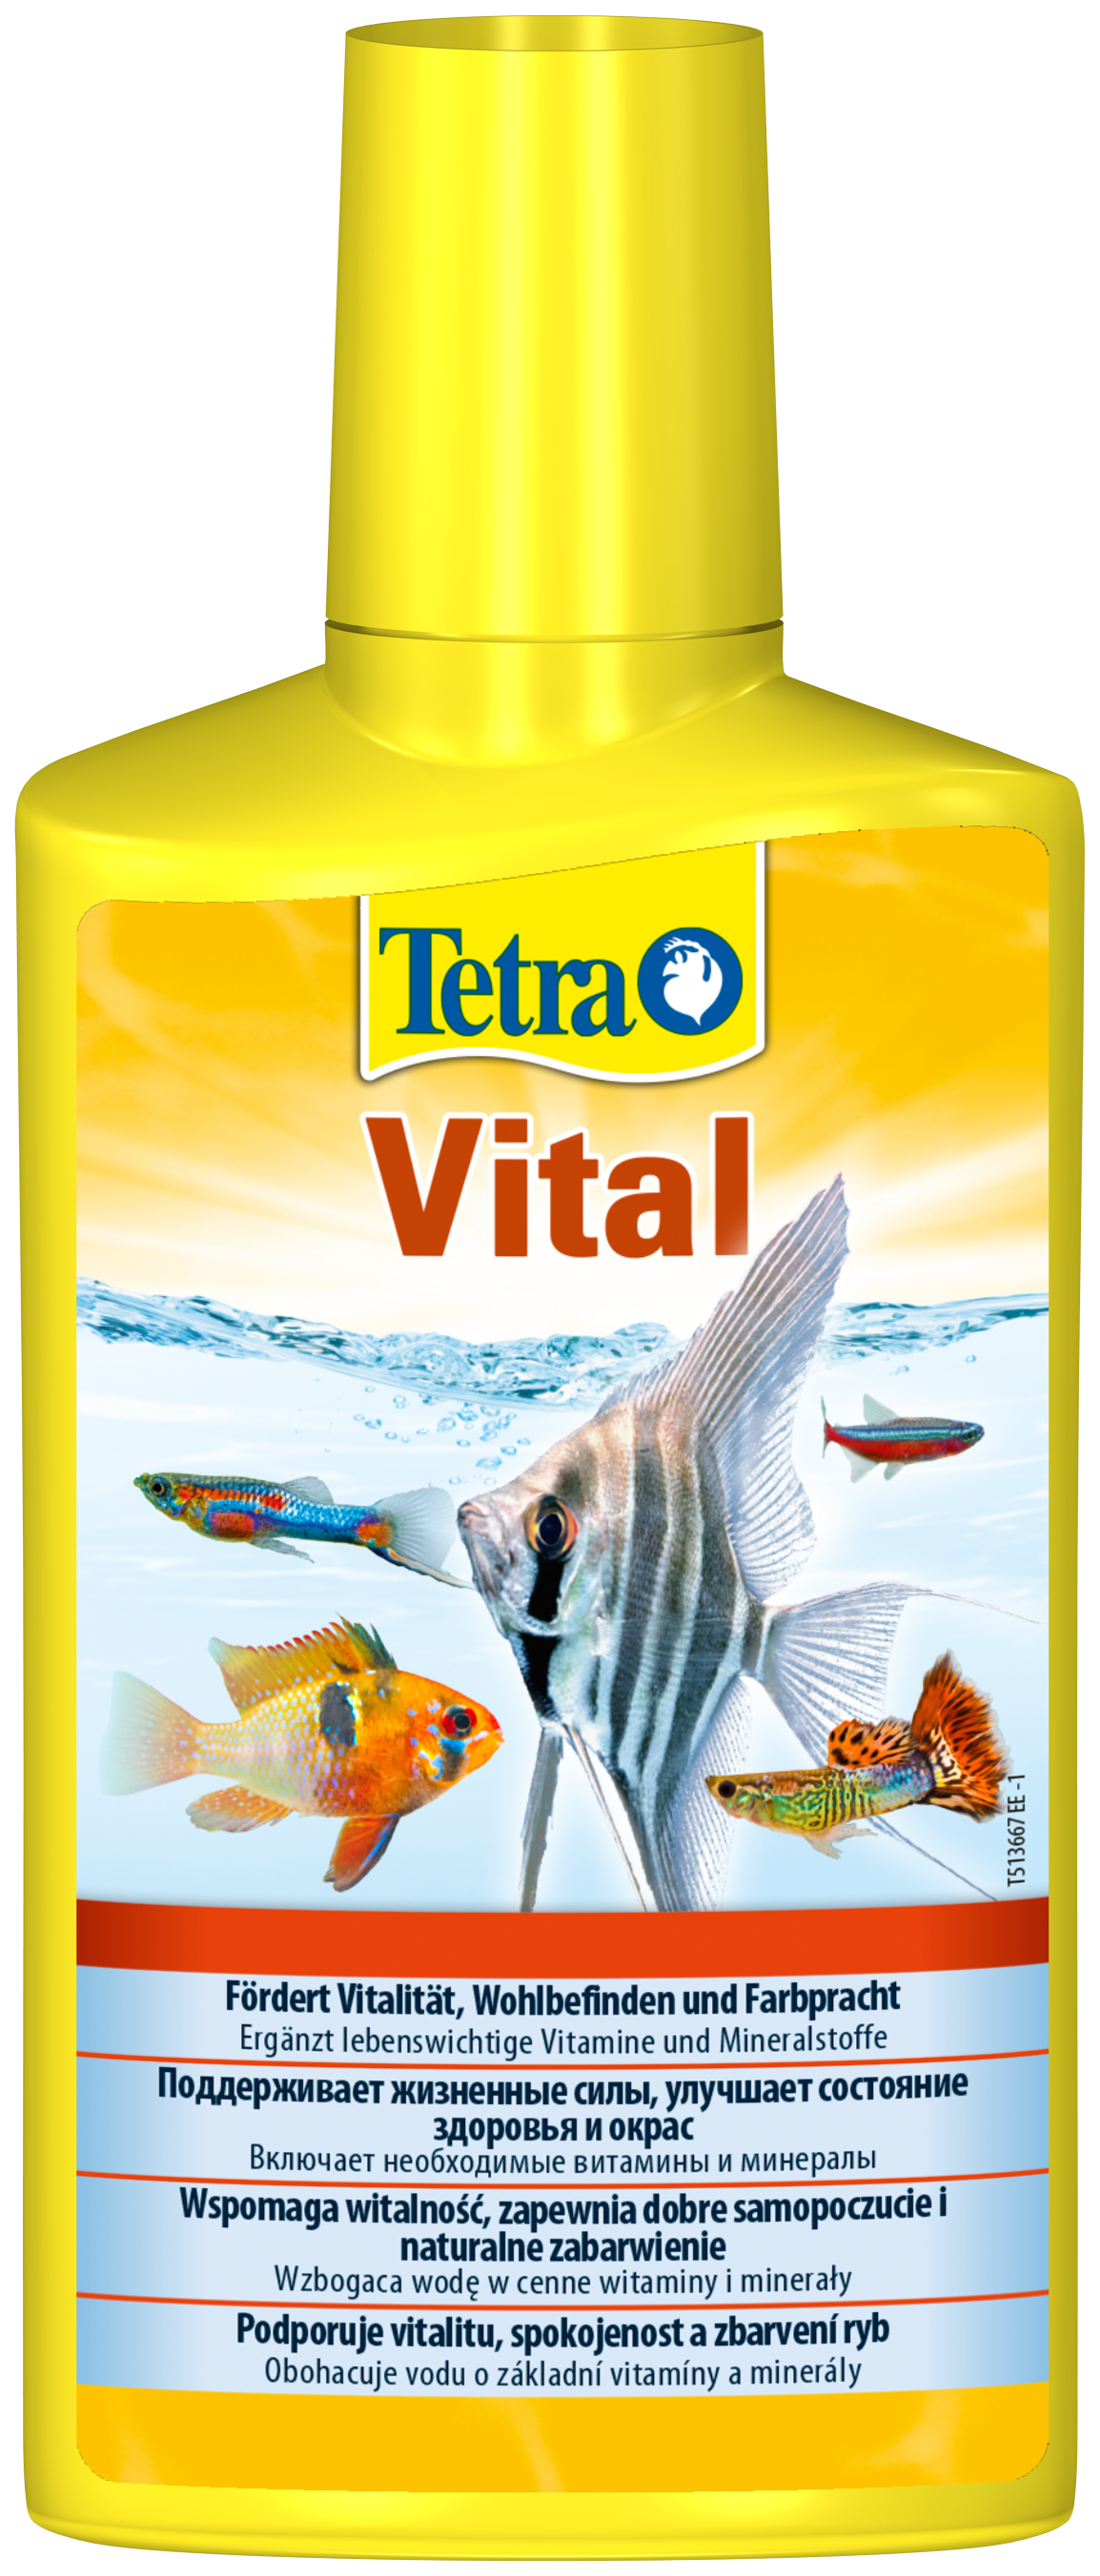 Средство Tetra Vital для создания и поддержания условий в аквариуме, 2 шт по 500 мл